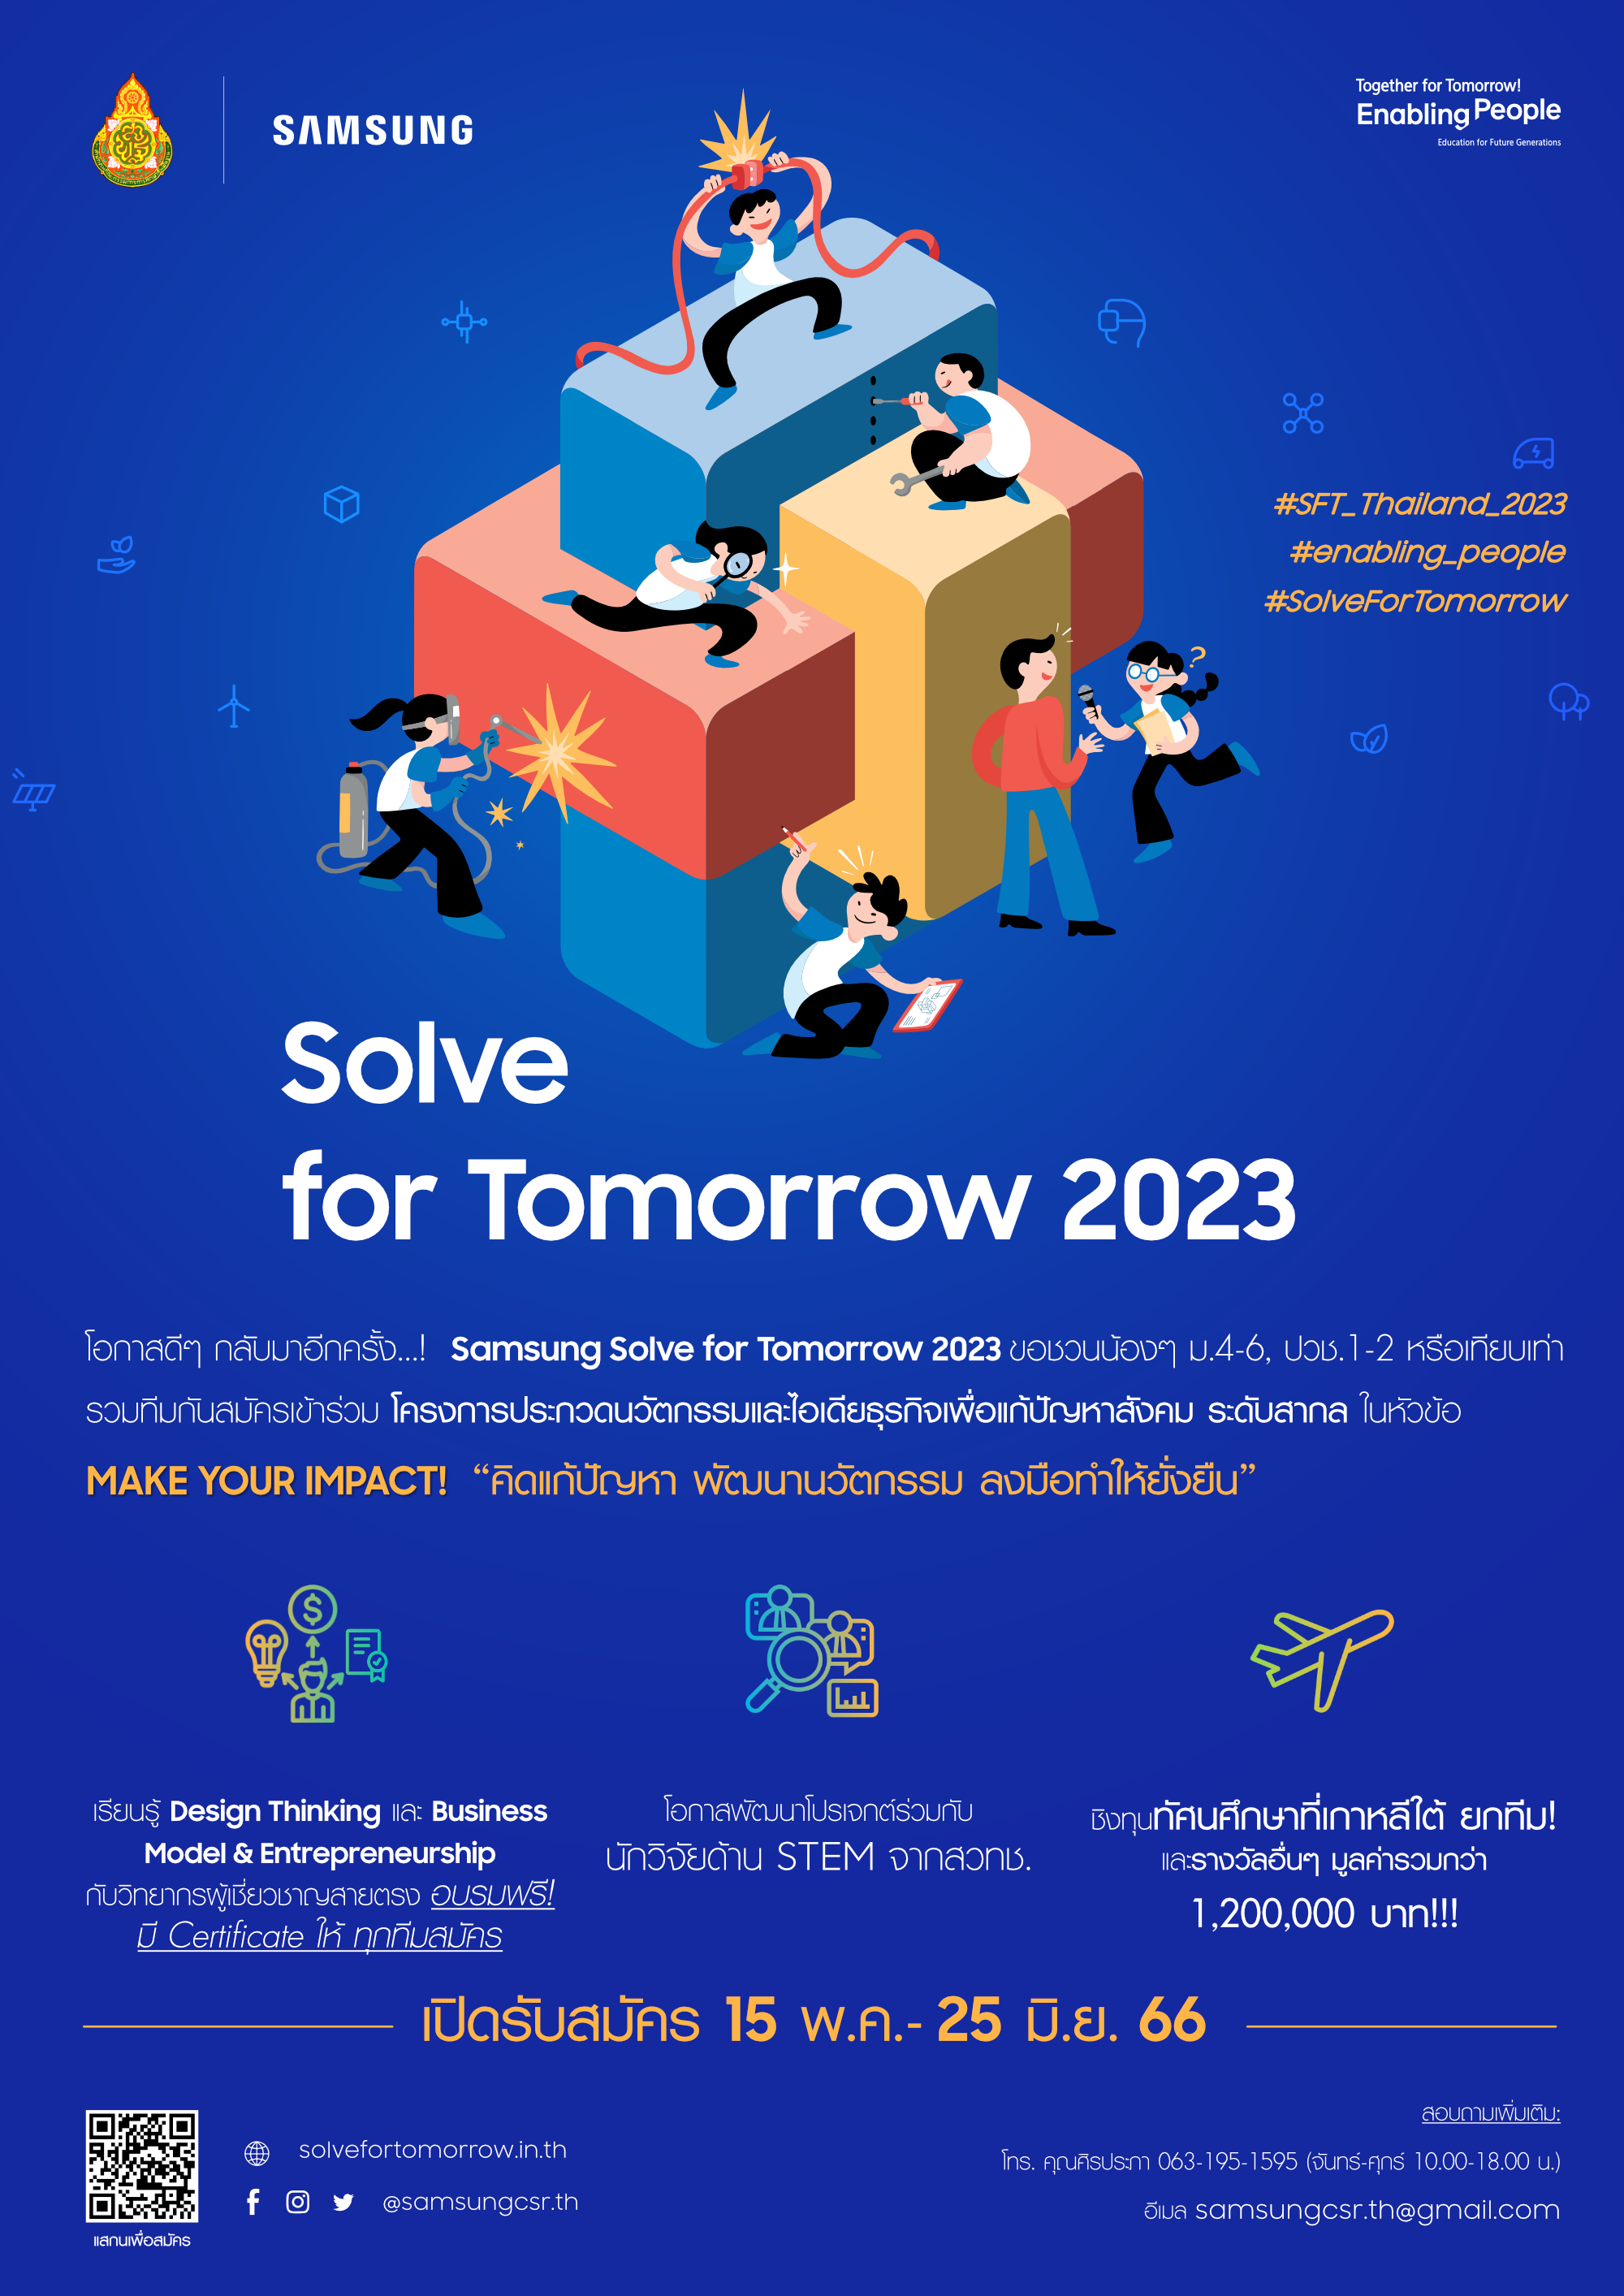 ซัมซุงชวนเยาวชนรวมทีมปล่อยพลังความคิดสร้างสรรค์ในโครงการ Solve for Tomorrow 2023